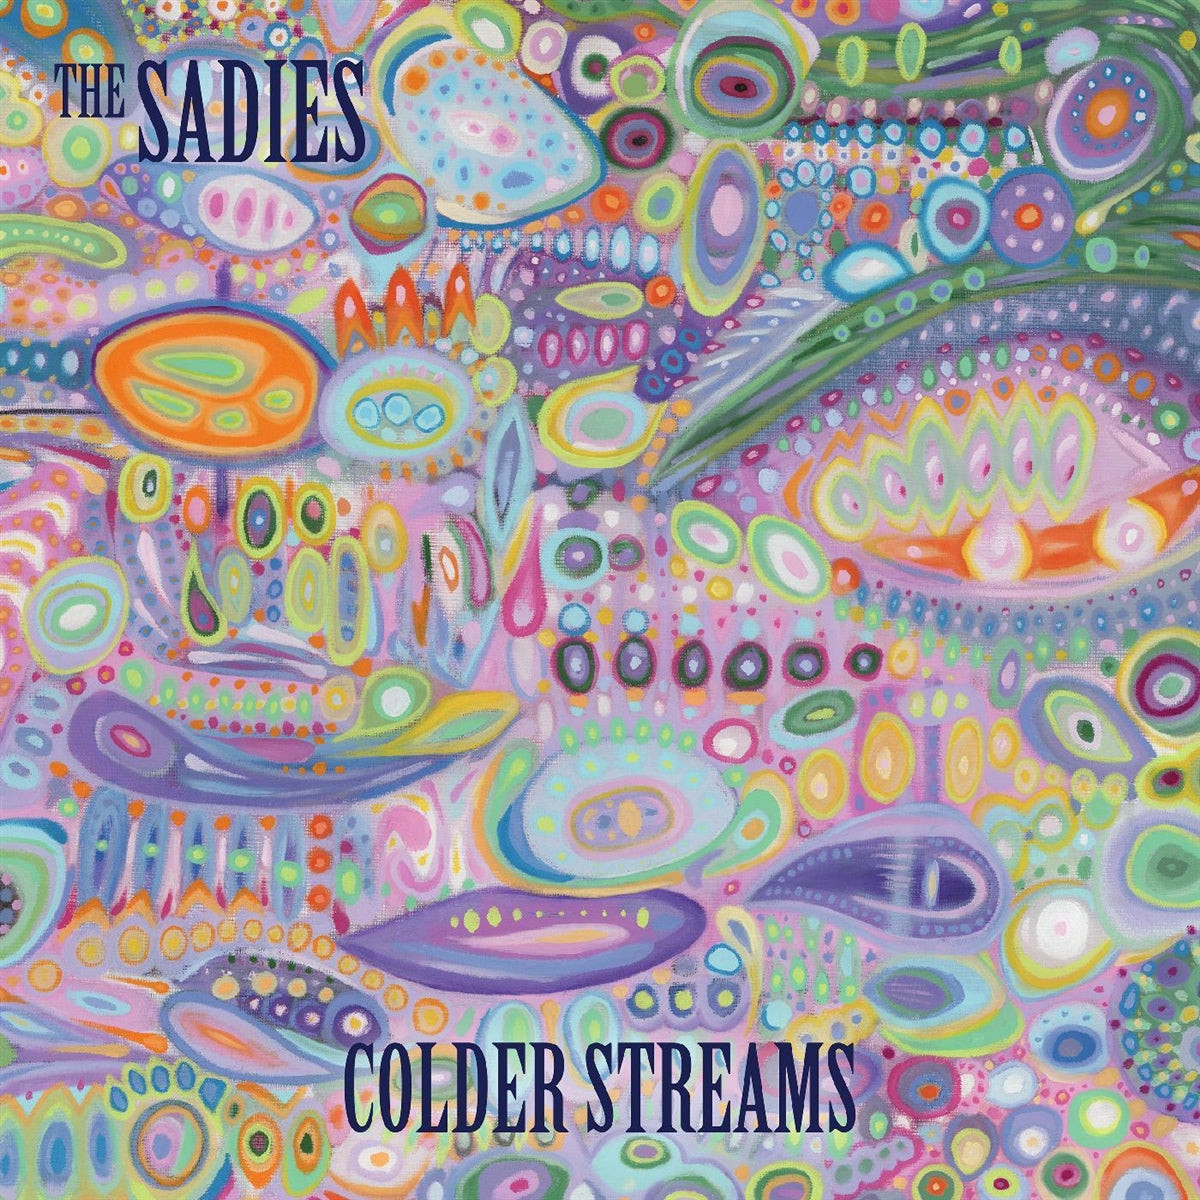 THE SADIES - COLDER STREAMS - COLOR AZUL HIELO - LP DE VINILO